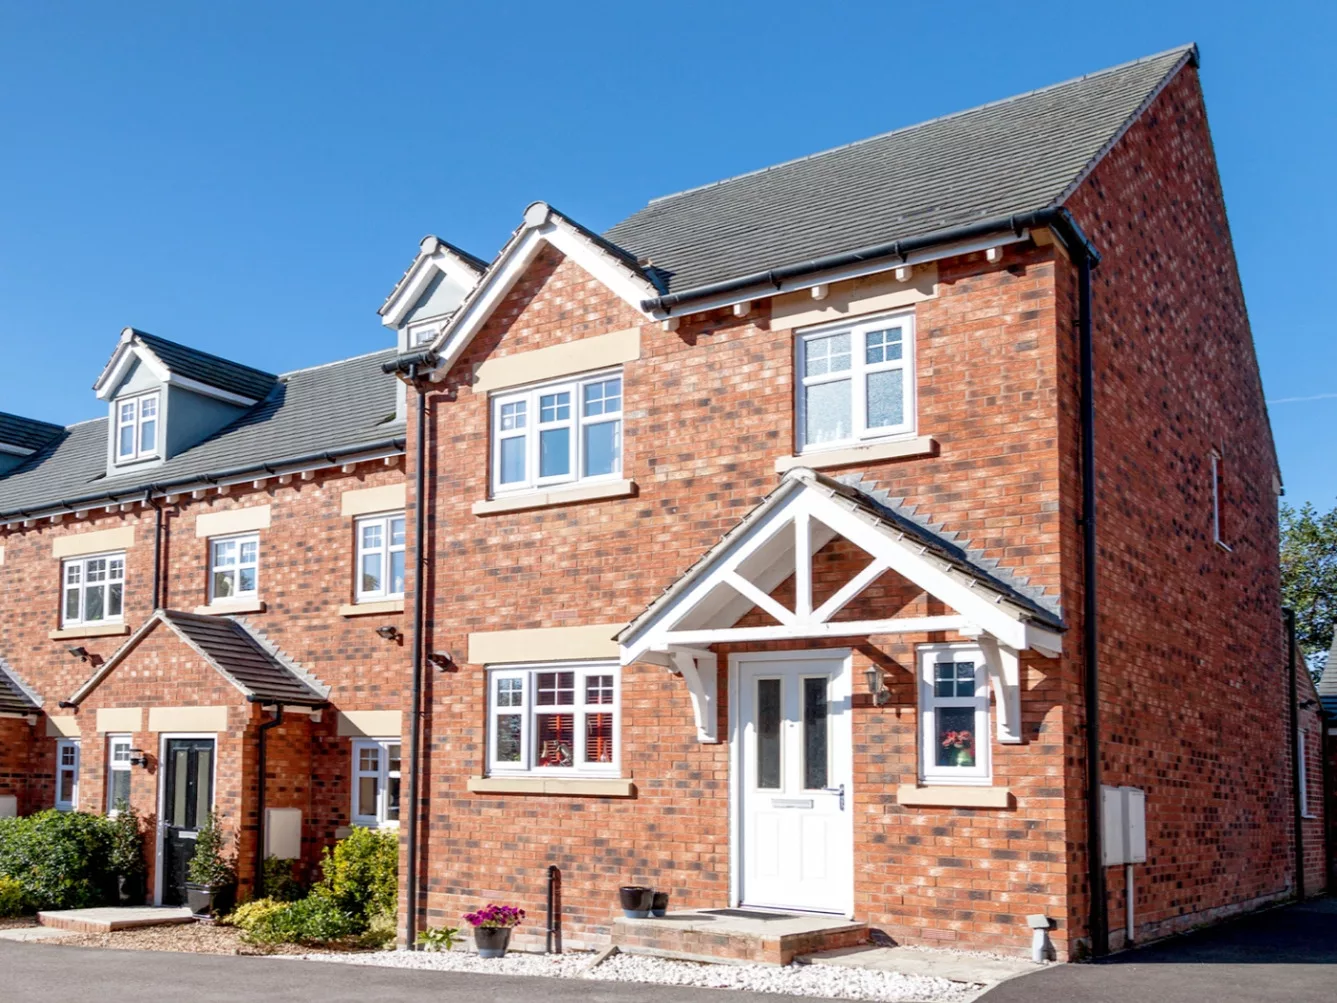 المملكة المتحدة: أسعار المنازل تنخفض بنسبة 5.3% في سبتمبر 